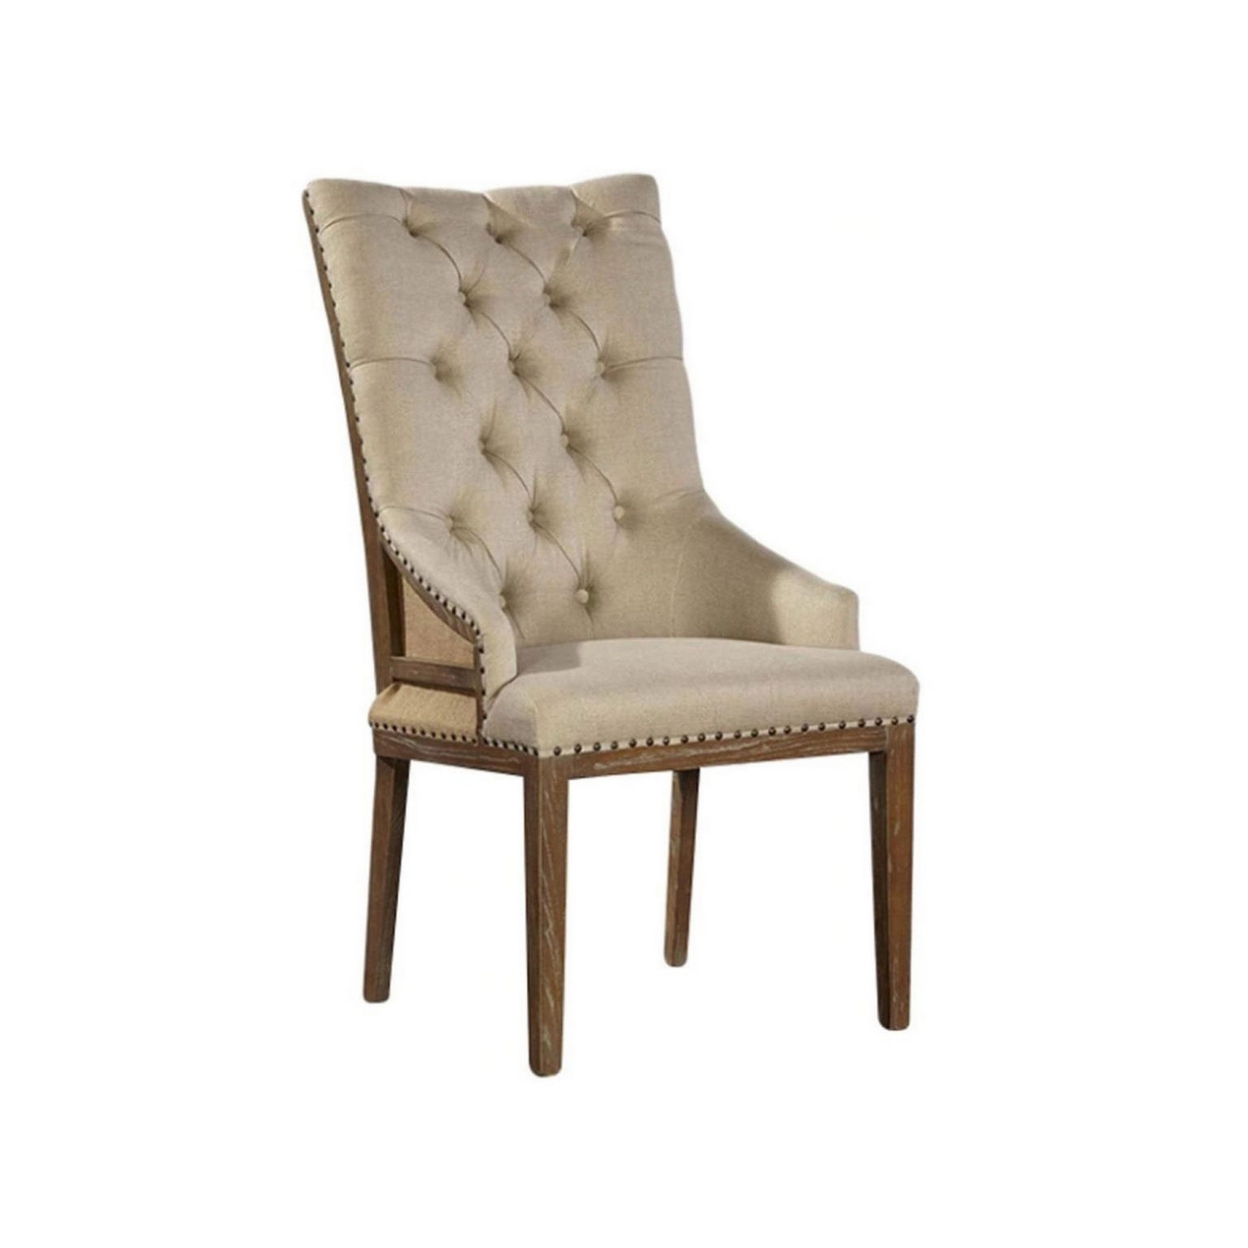 28 Inch Dining Chair, Button Tufted Backrest, Nailhead Trim, Beige Linen- Saltoro Sherpi